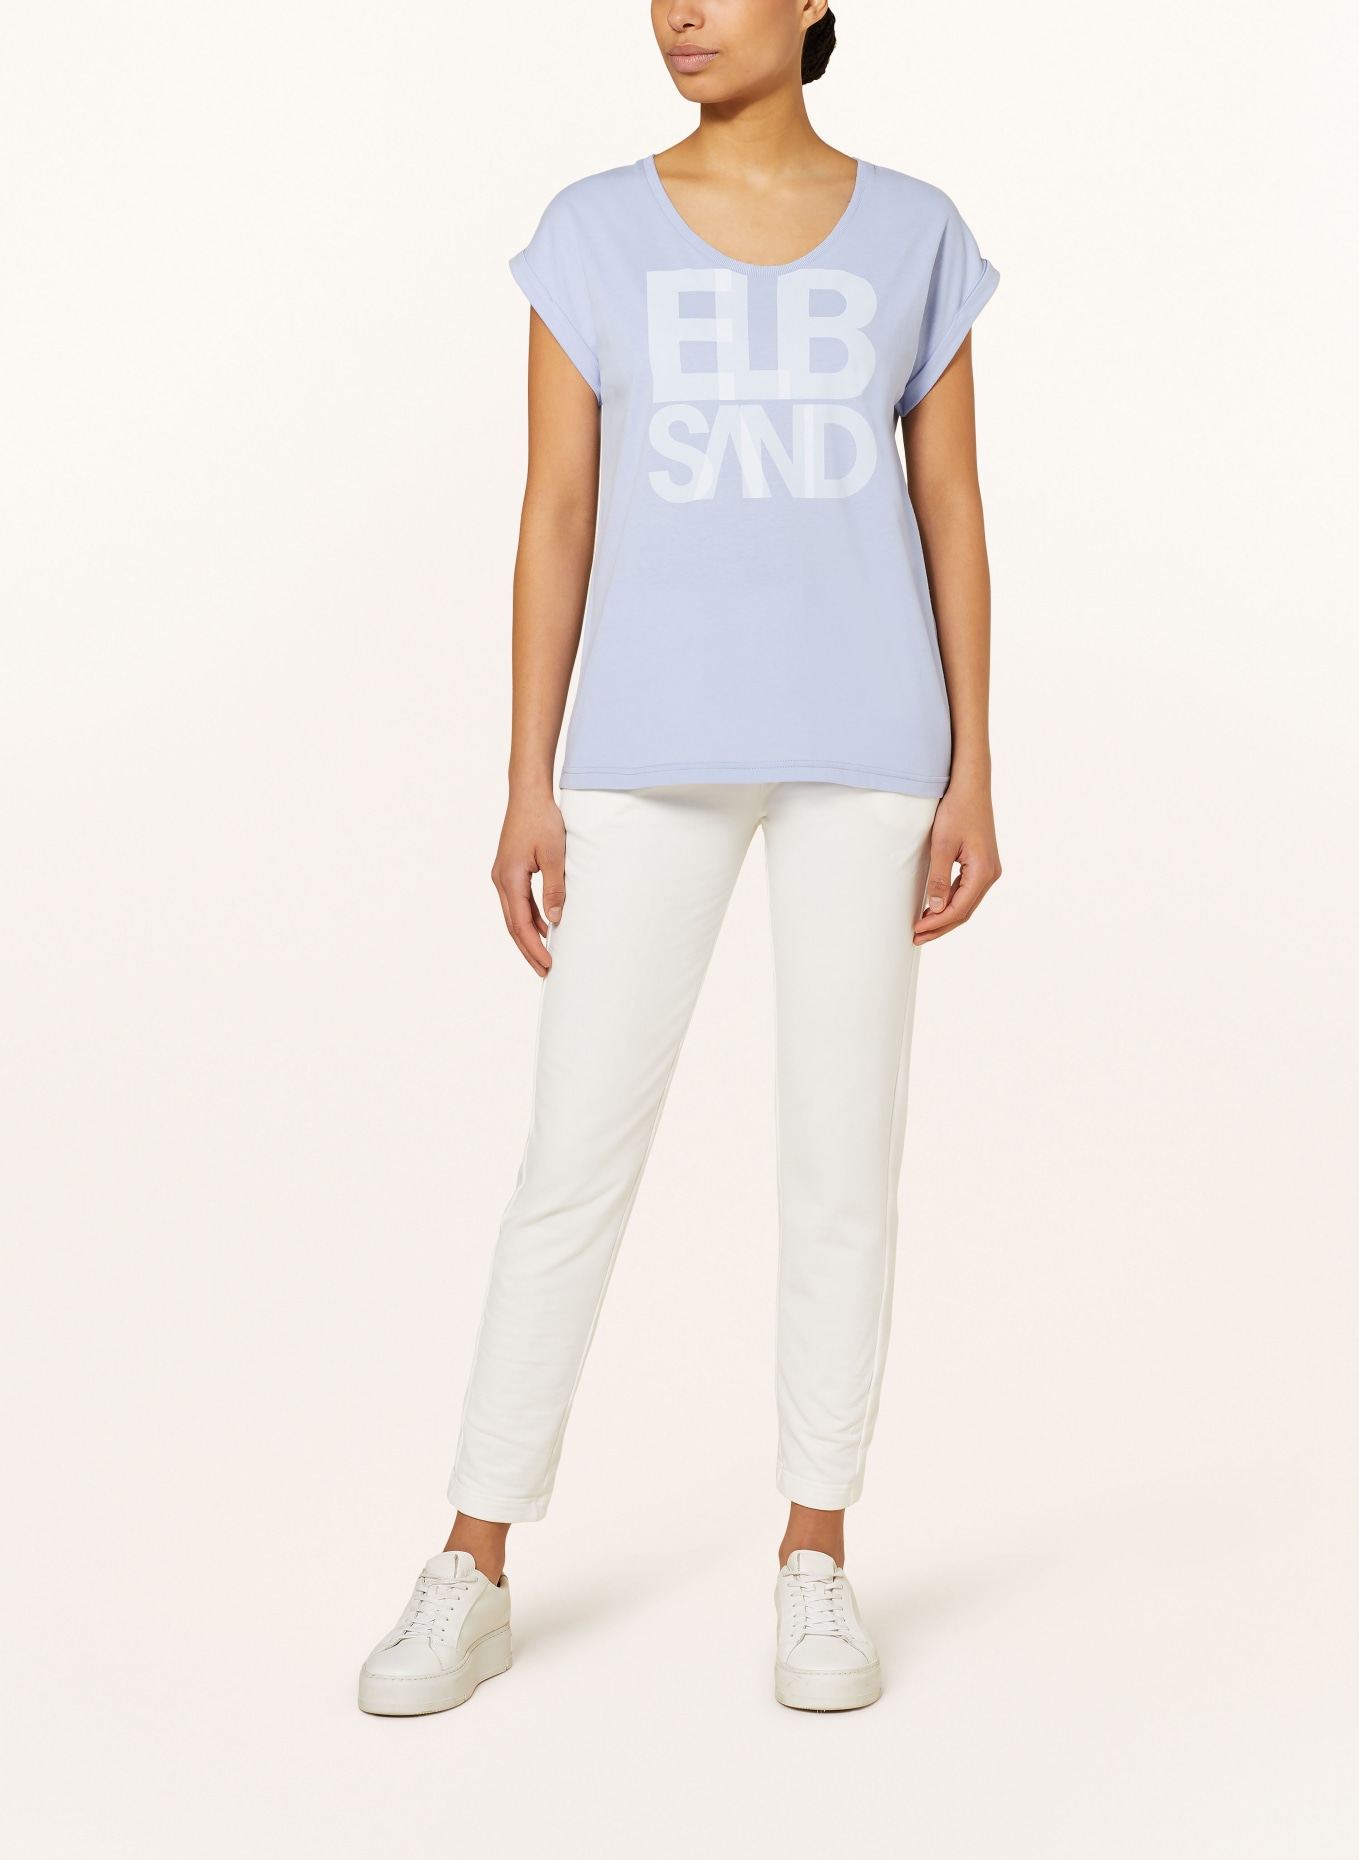 ELBSAND T-Shirt ELDIS, Farbe: HELLBLAU (Bild 2)